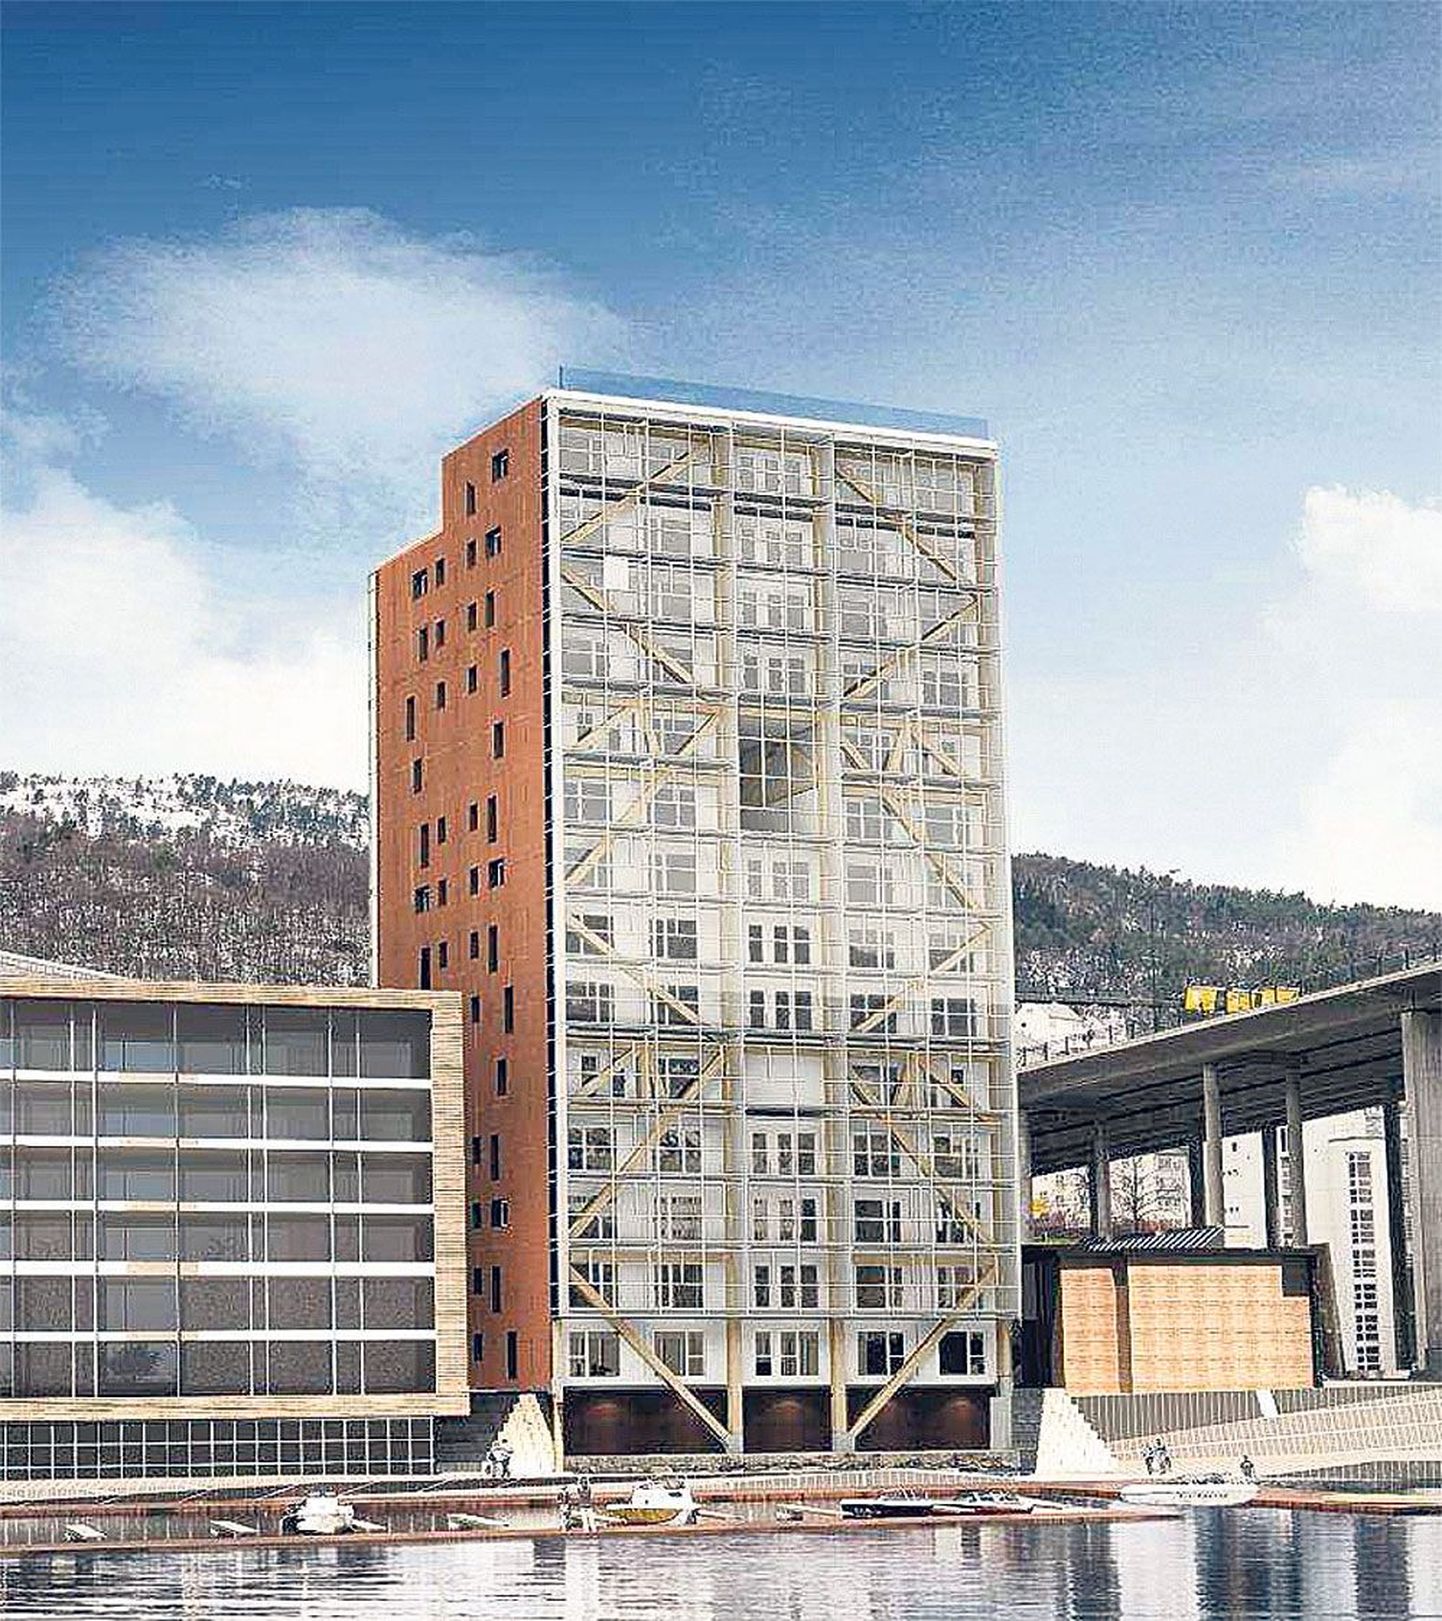 Norrasse Bergenisse ehitatav maailma
kõr­geim puitmaja, 51 meetri kõrgune 62 korteriga elamu valmib 2015. aasta lõpus. Hoone arhitekt on Artec Prosjekt Team AS, staatika, tuleohutuse, akustika ja mitmetes muudes tehnilistes küsimustes aitab konsultatsioonifirma Sweco AS, liimpuitkonstruktsioonid tarnib Moel­ven Limtre AS, ehitusmoodulid ehk korterid jm hoo­ne osad ehi­tab Kodumaja ASi tütarfirma Kodumajatehase AS. Eri­alaste ettepanekutega toetavad Trefo­kus AS, Norra puidutehnoloogia instituut ning Trondheimi tehnika ja loodusteaduste ülikool.